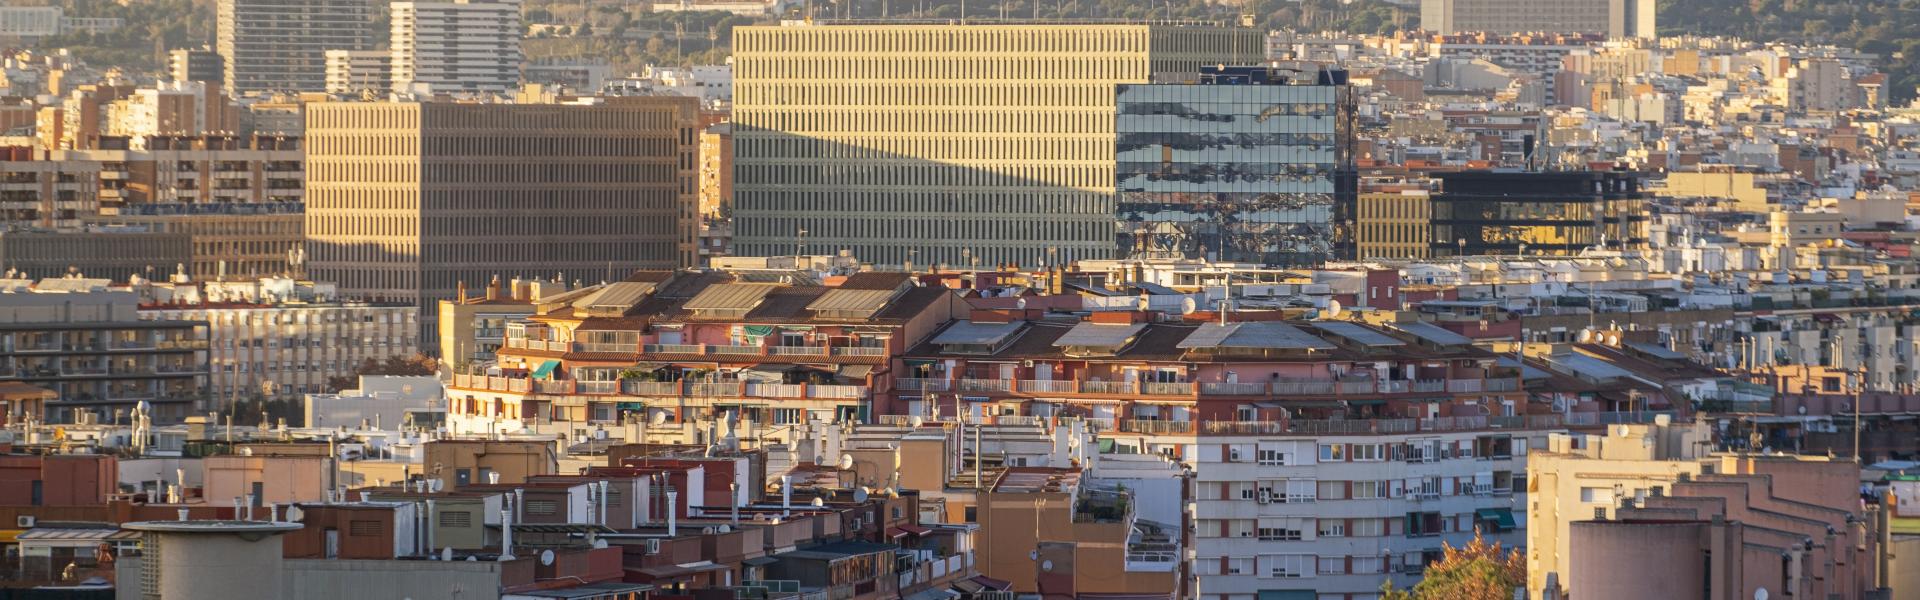 L'Hospitalet de Llobregat Scenic View